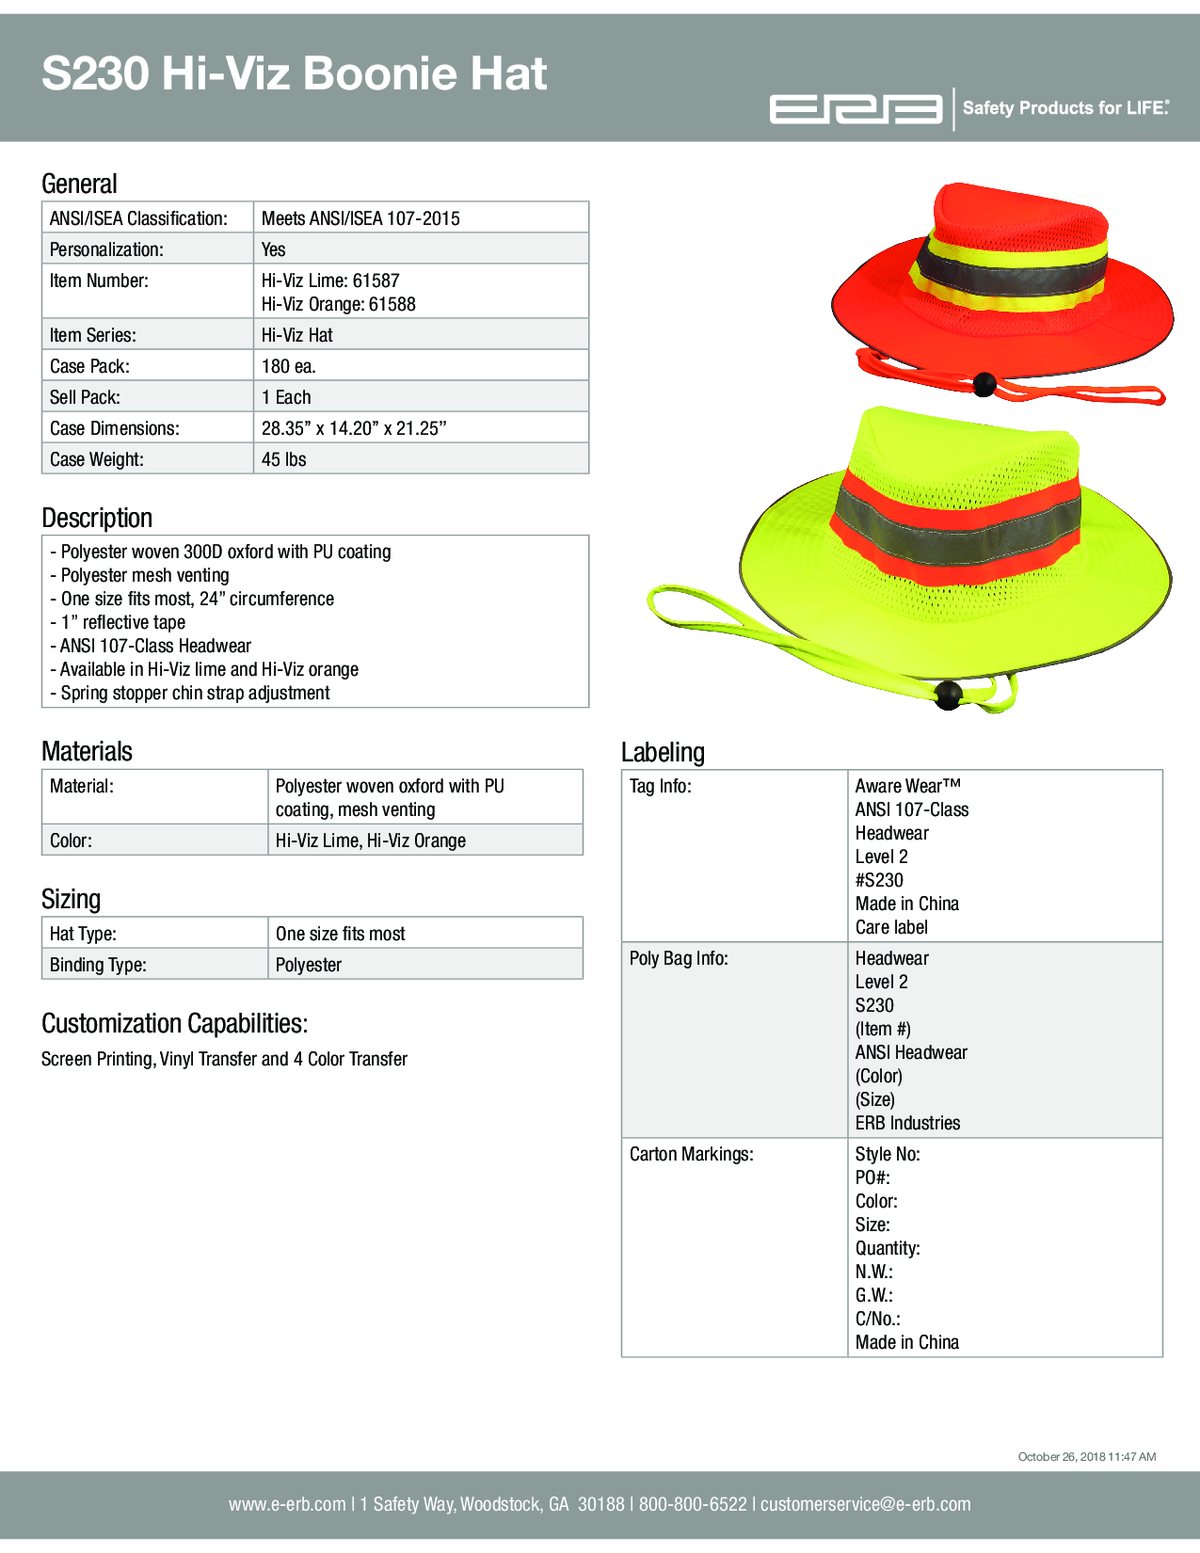 S230 Boonie Hat